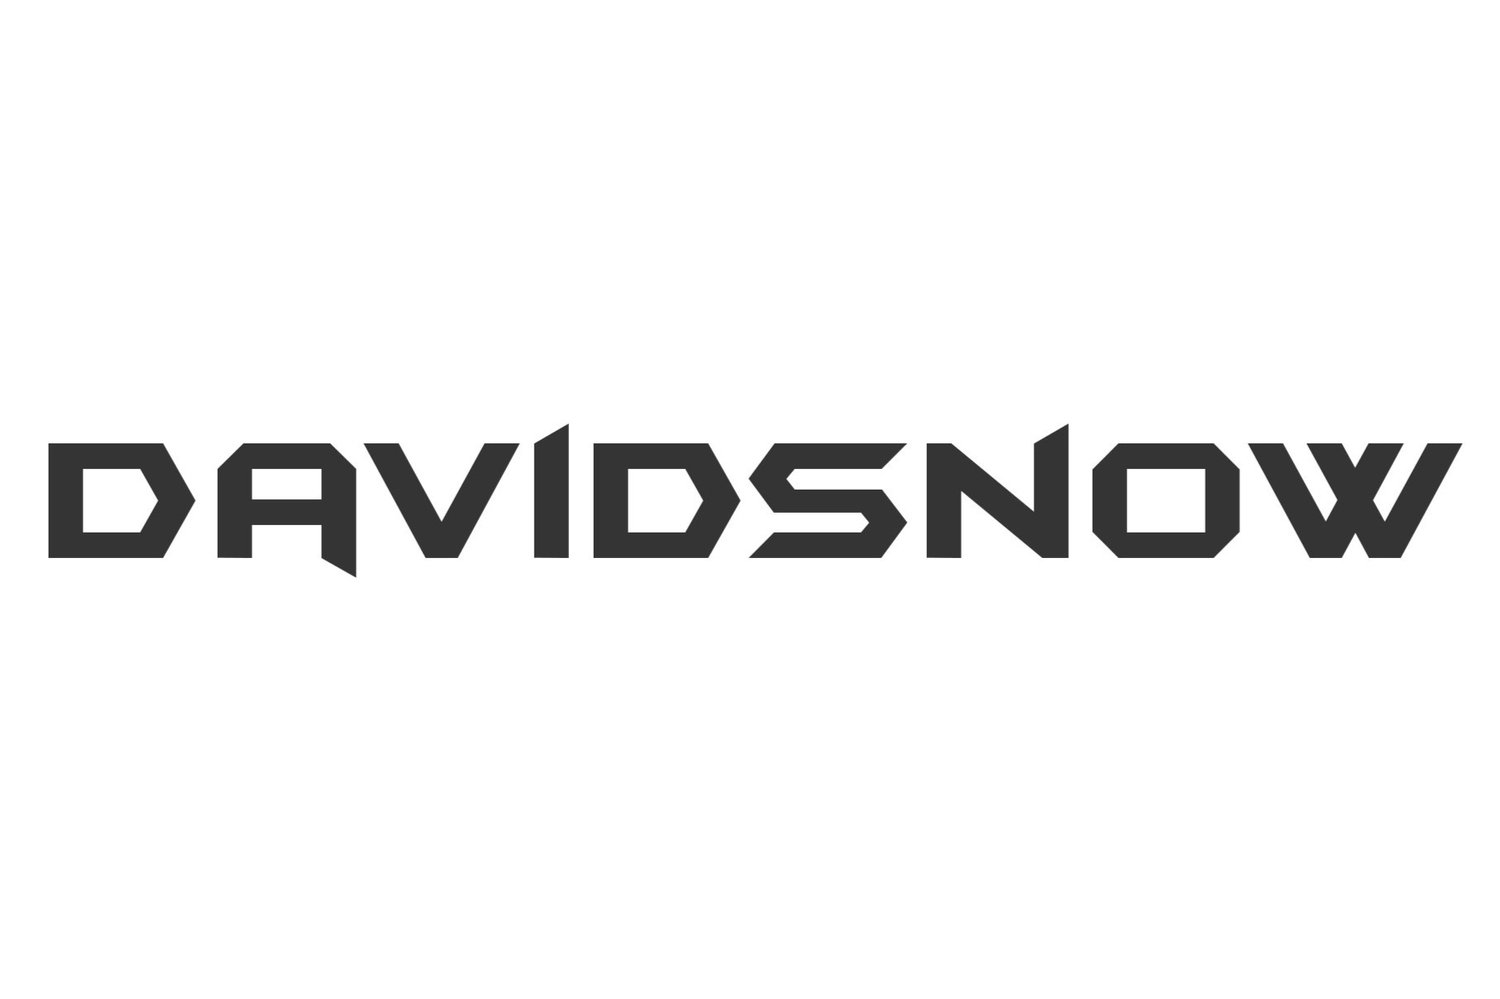 Davidsnow Official